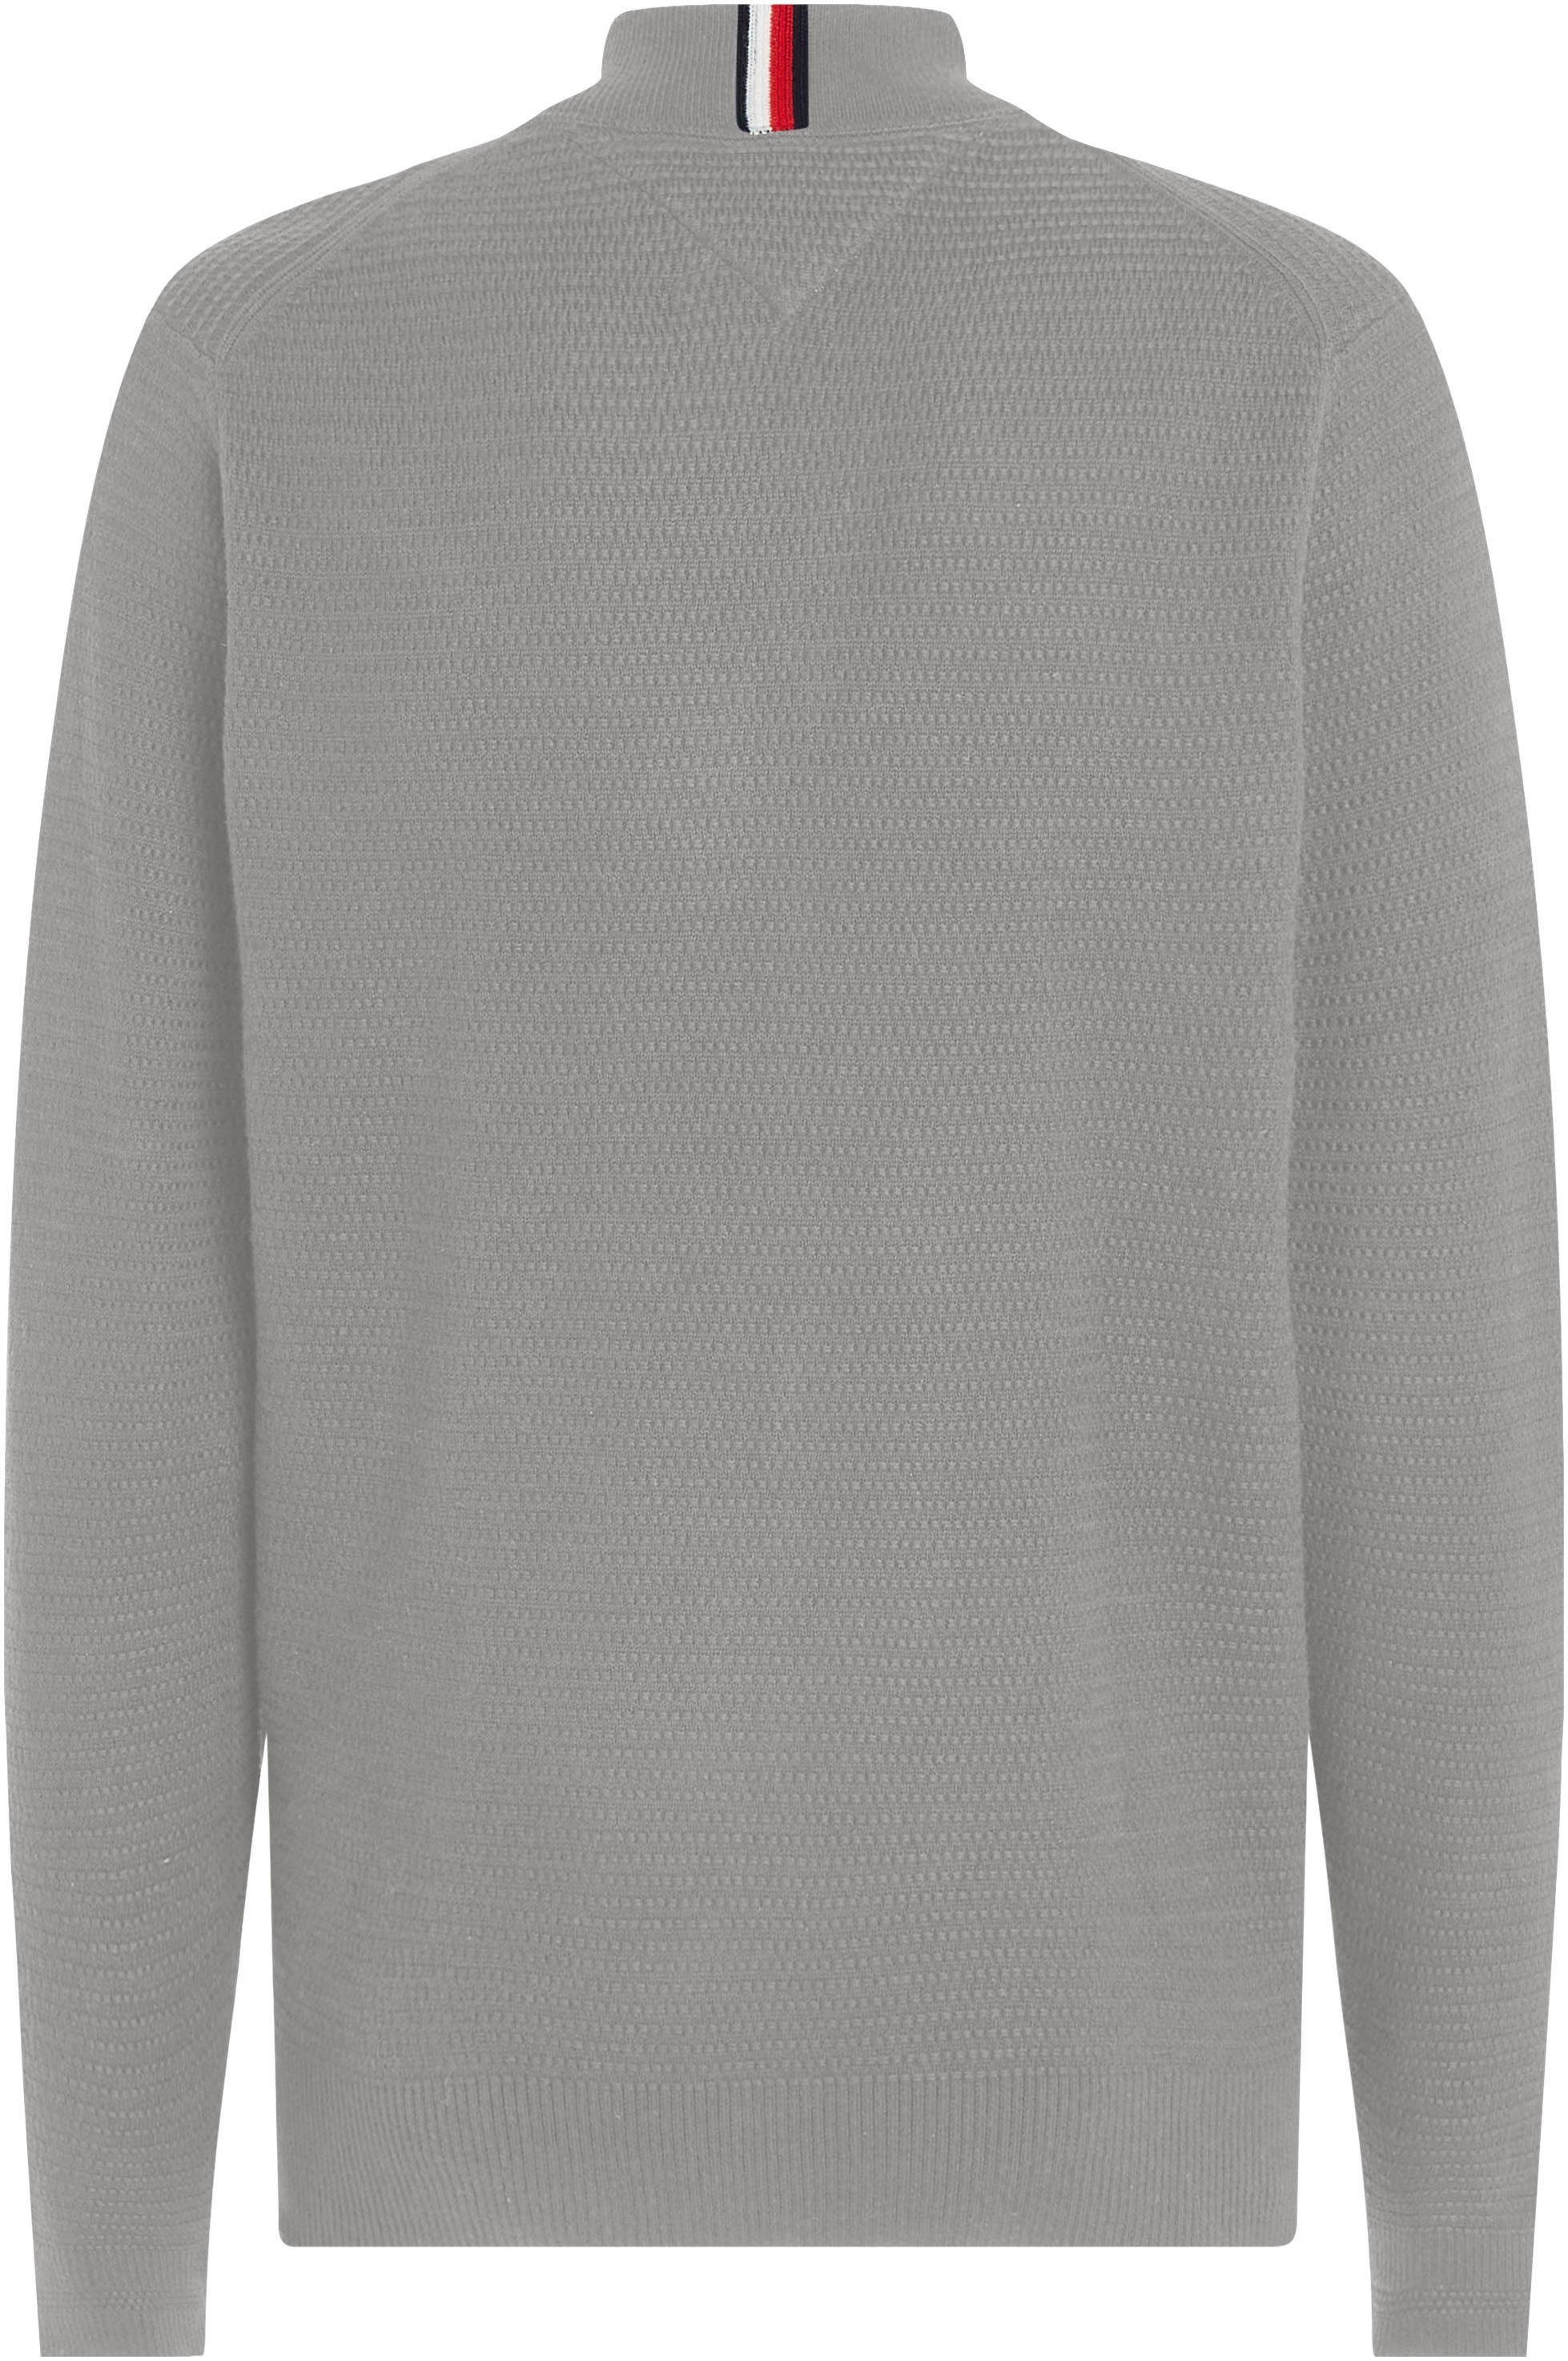 BASEBALL Medium ZIP in strukturierter THROUGH Grey Heather INTERLACED Sweatshirt Optik Tommy Hilfiger